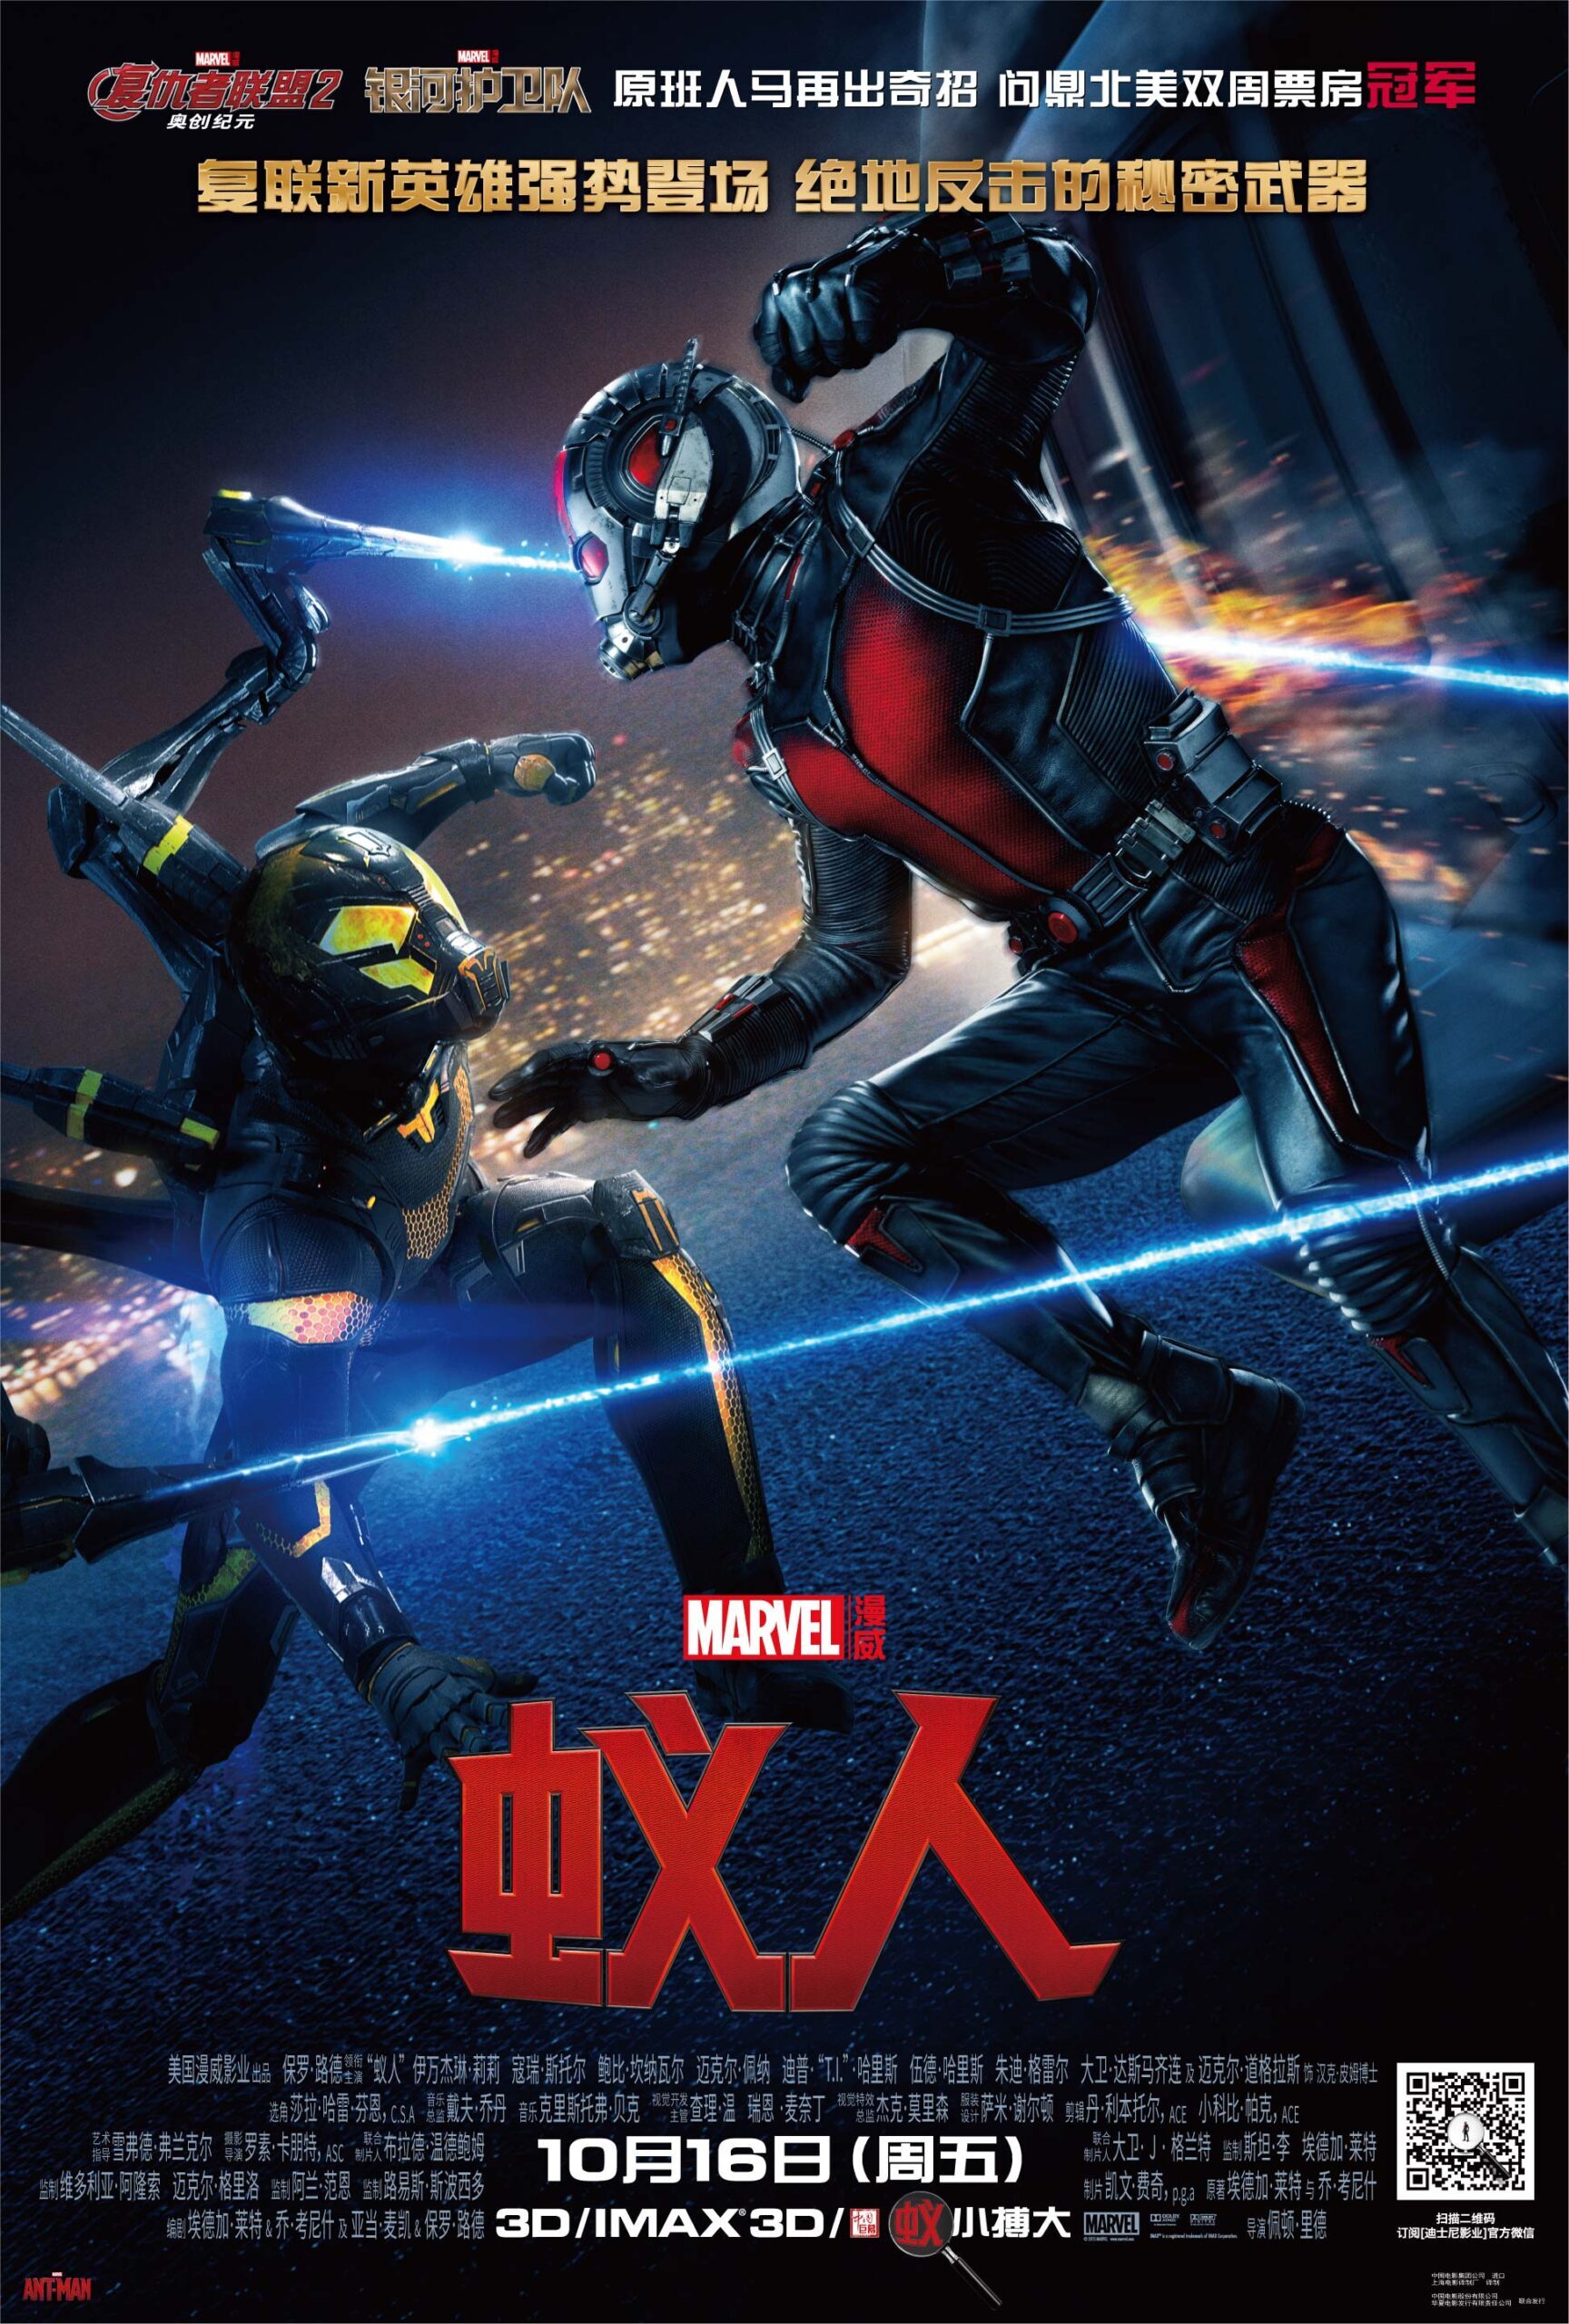 Melhores do Mundo - Ant Man Poster China 4569643 scaled